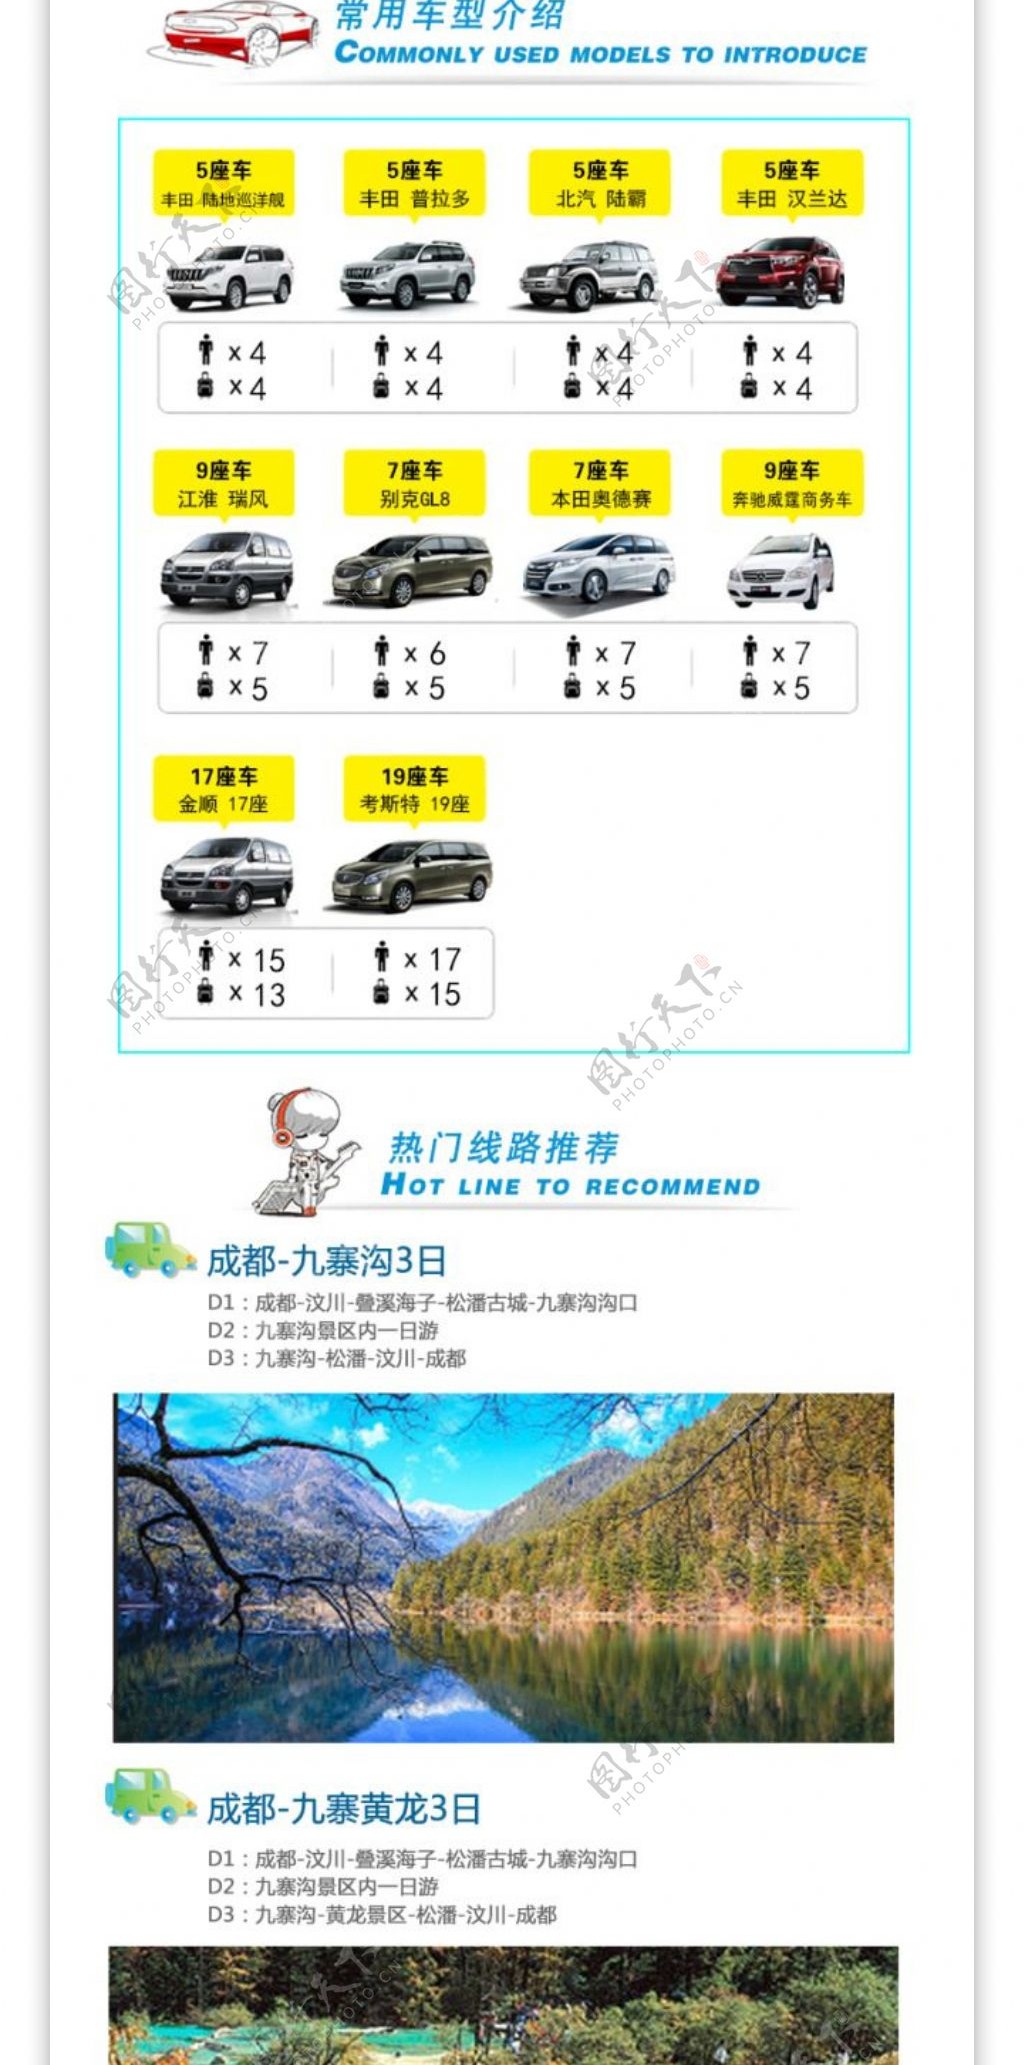 四川之旅旅游宣传海报设计